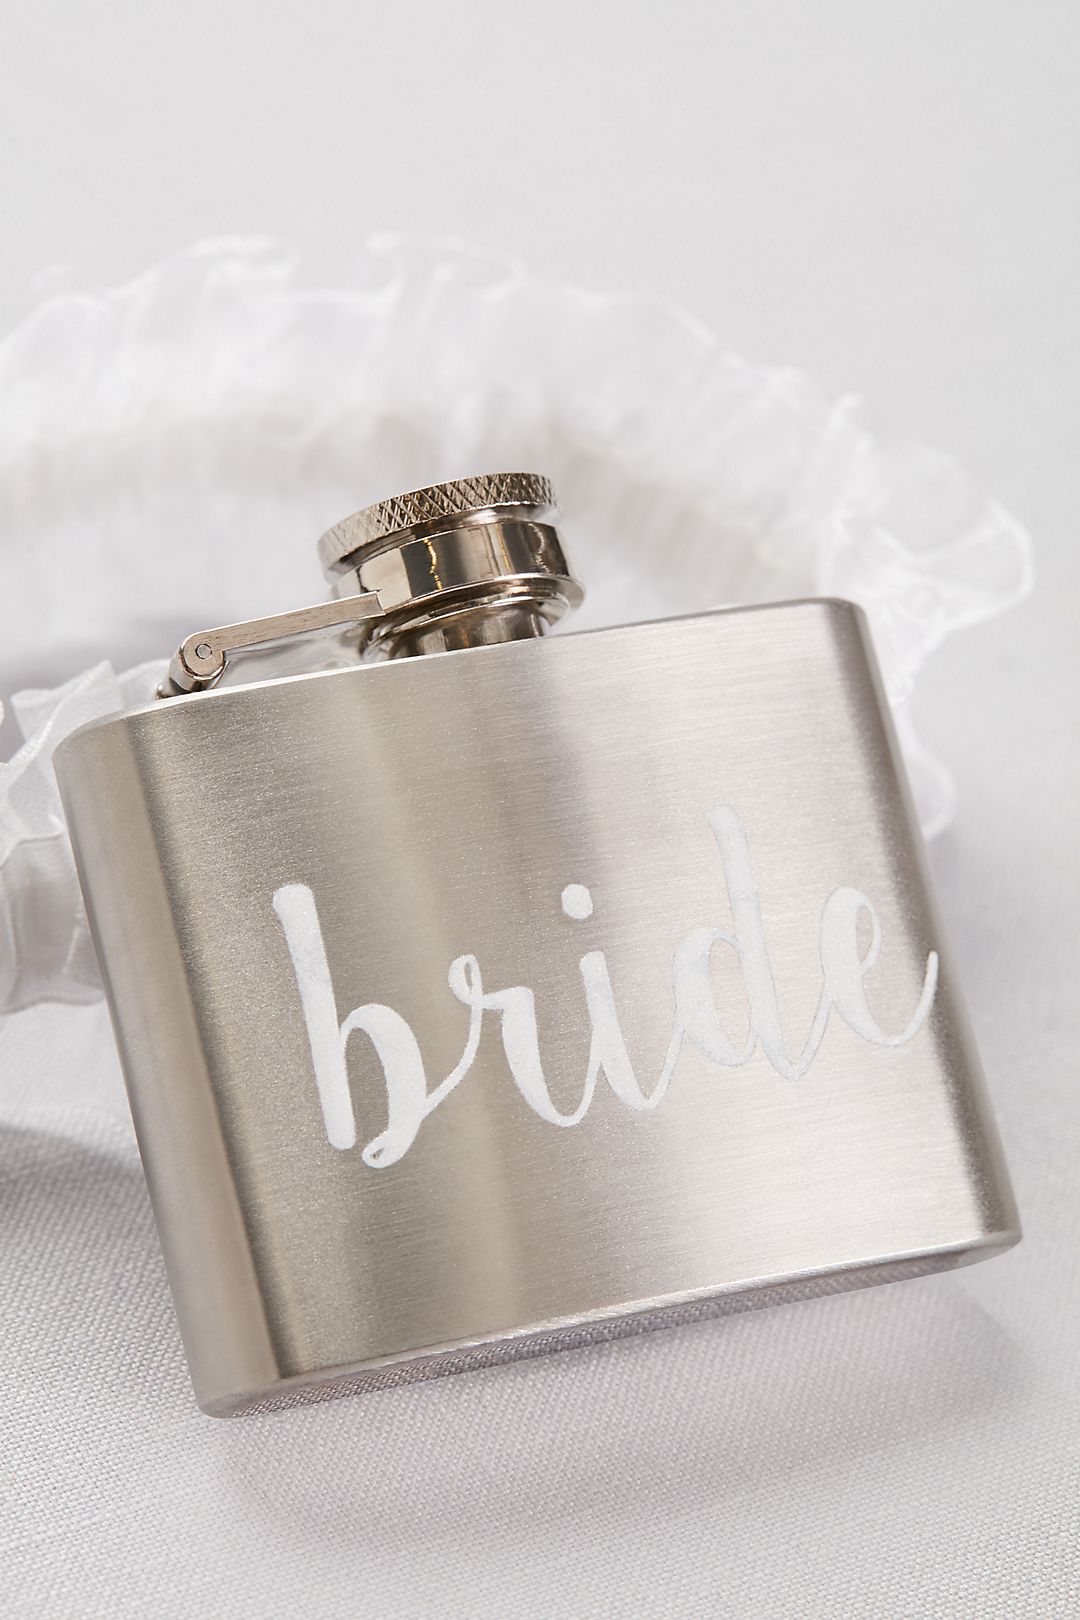 Bride Flask Garter Image 2